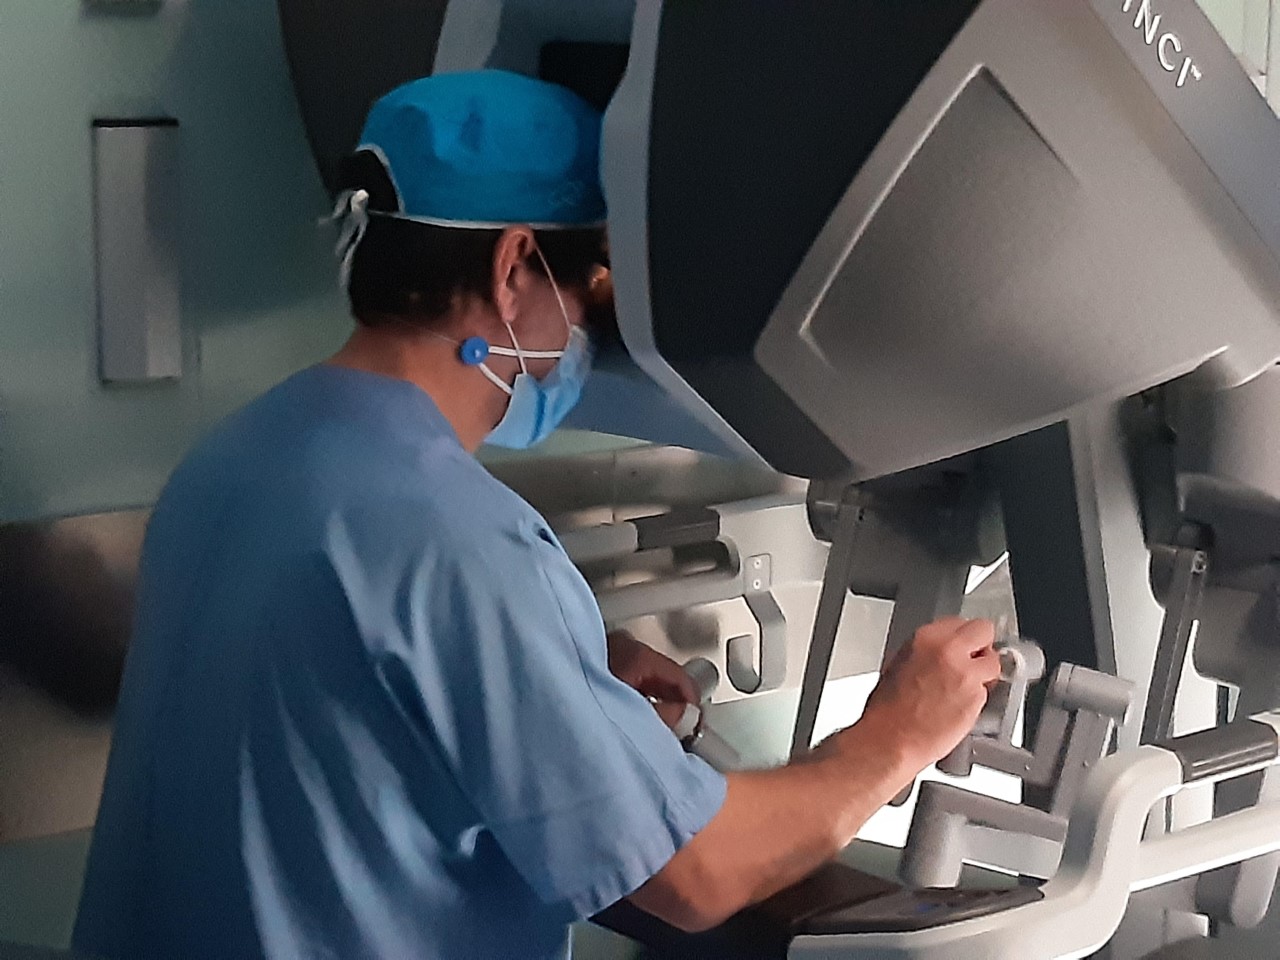 Il Covid non ha fermato la chirurgia robotica: tecniche mini-invasive per asportare i tumori